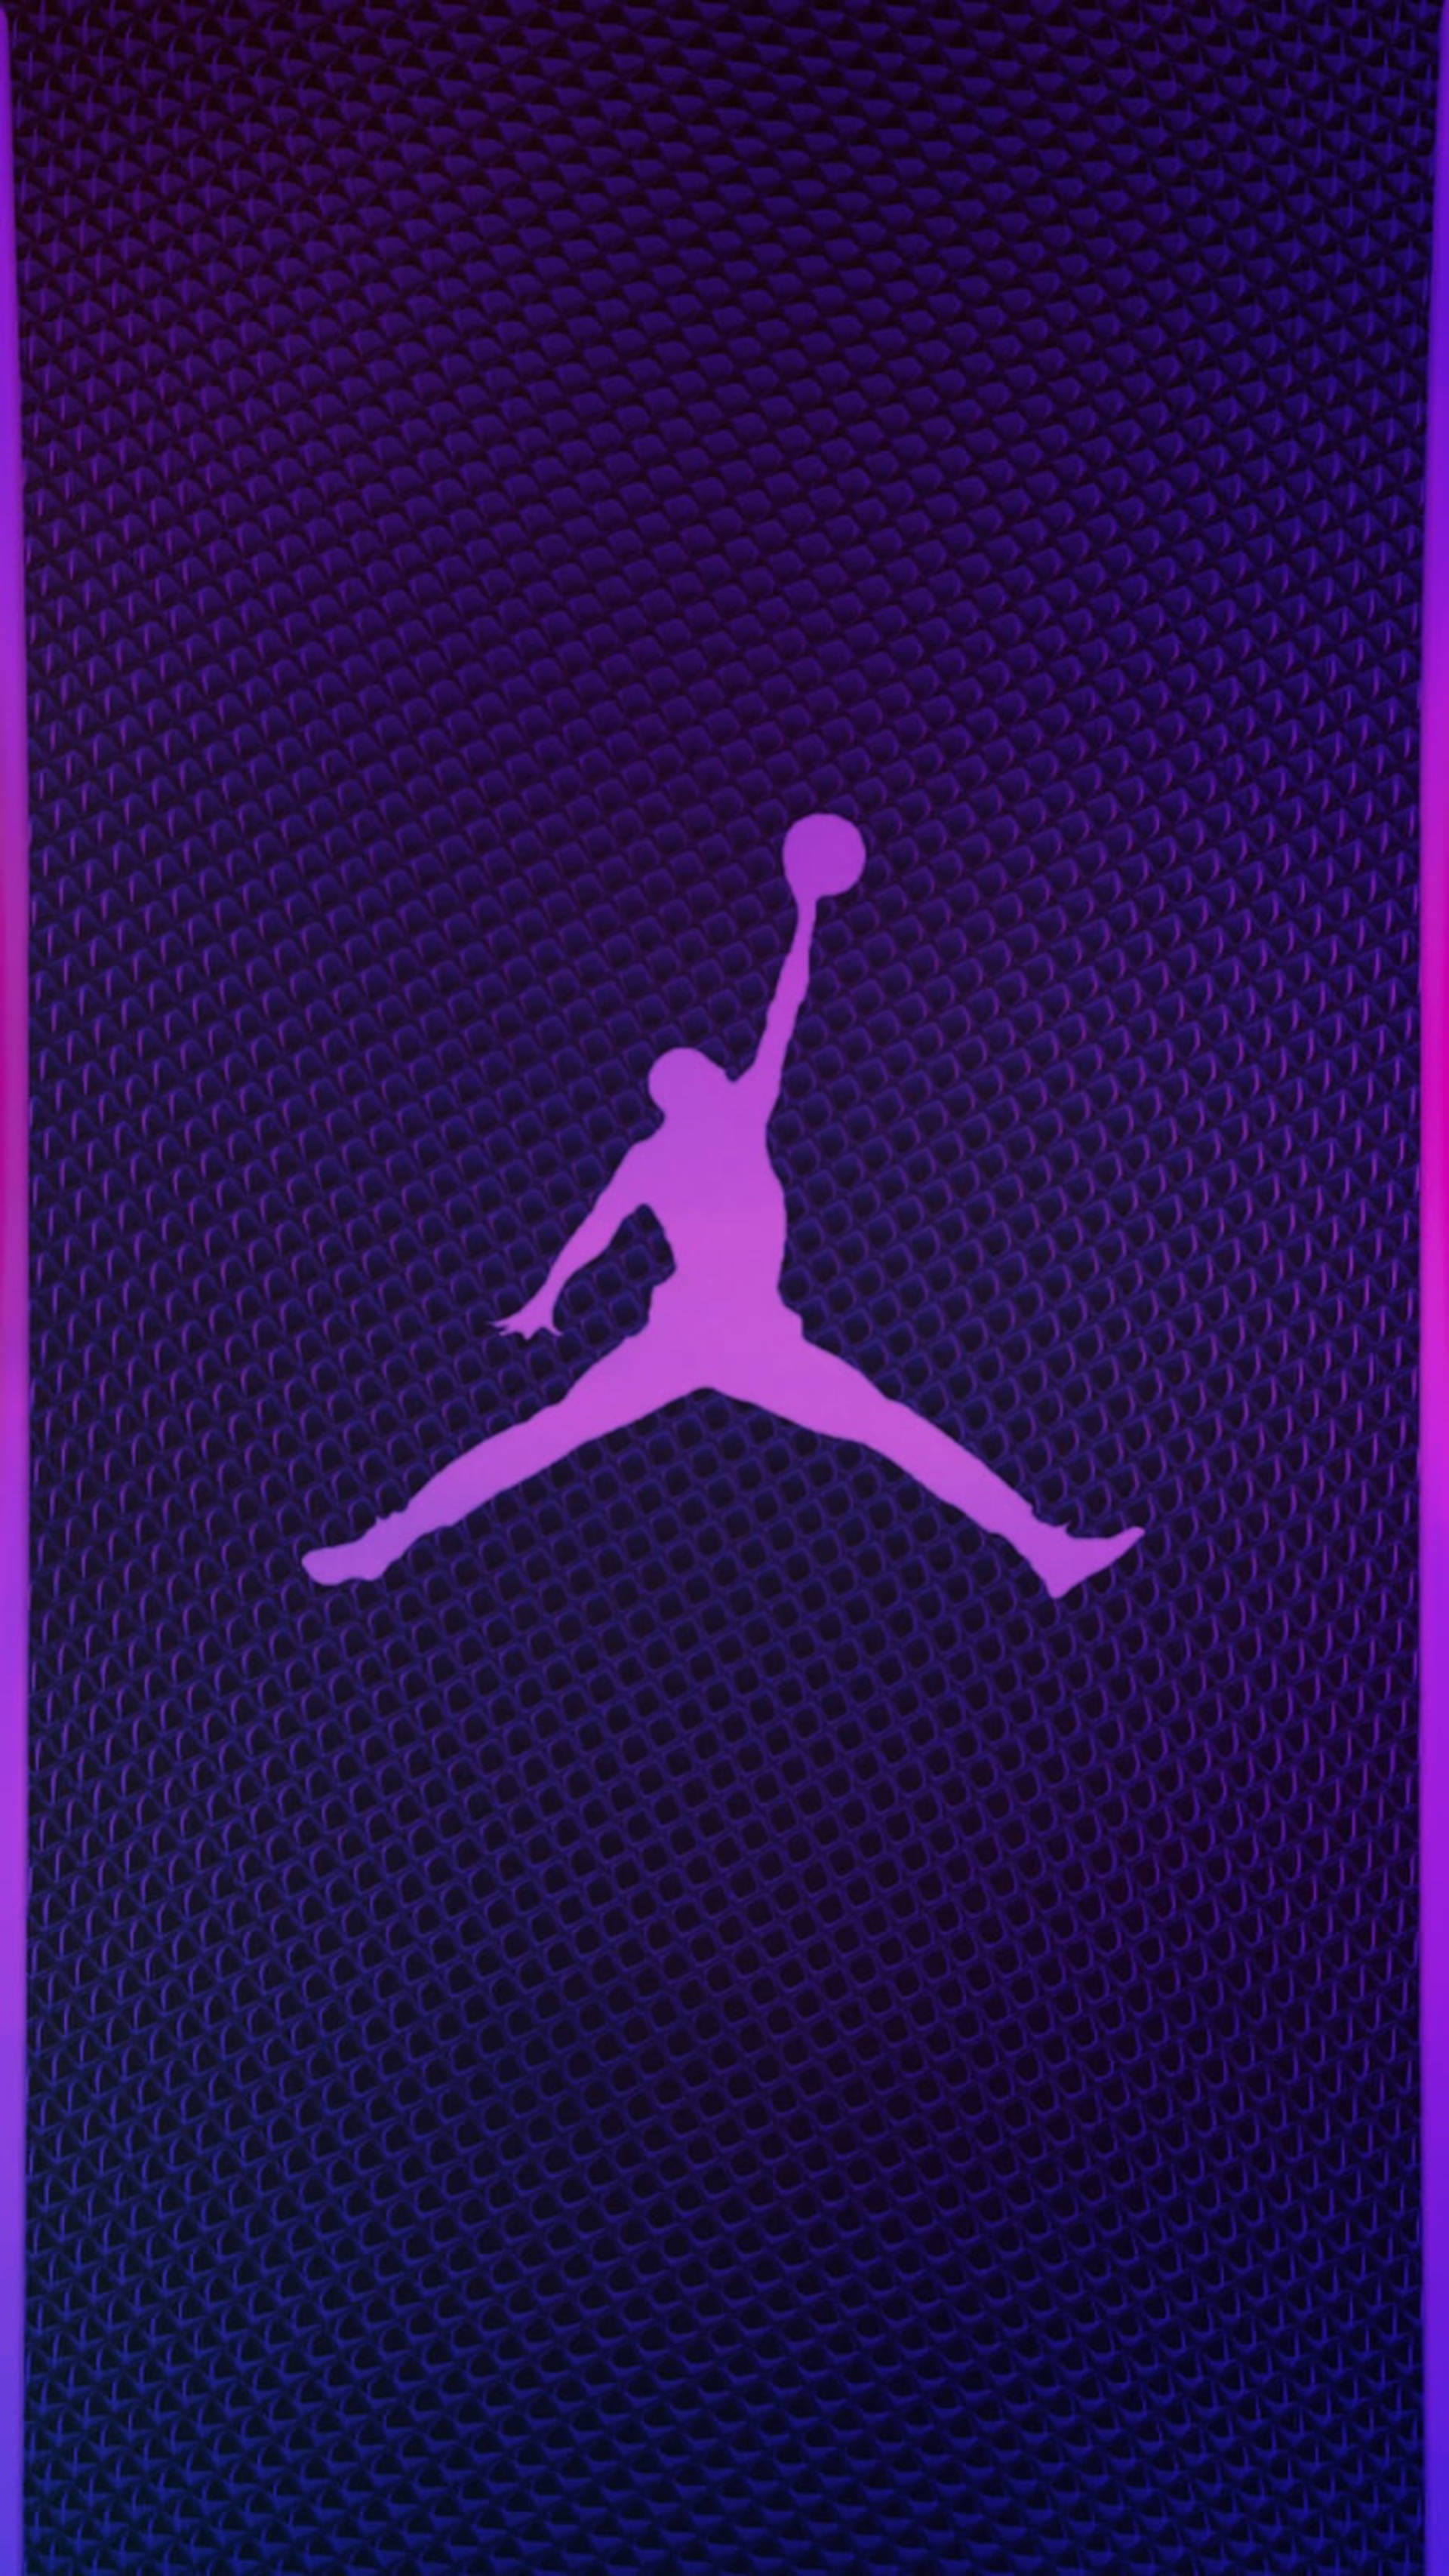 Download Violet Air Jordan Logo Wallpaper